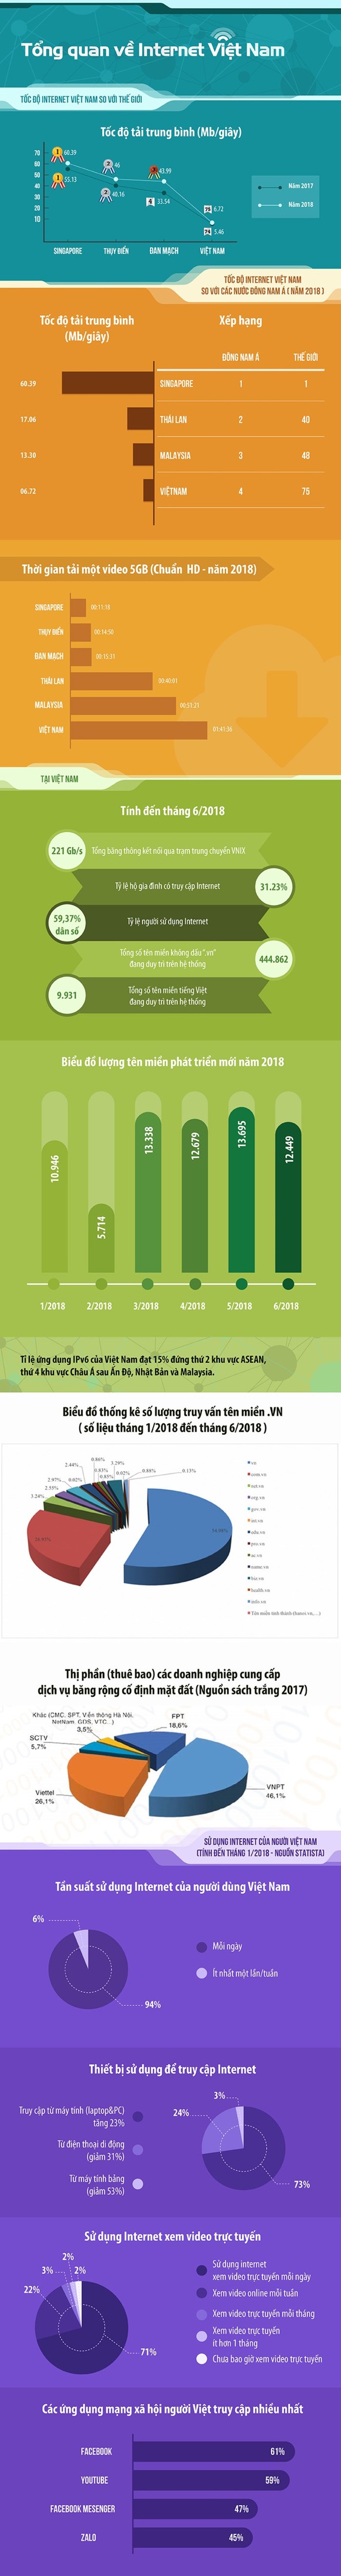 Những con số đáng chú ý về Internet của Việt Nam ảnh 1